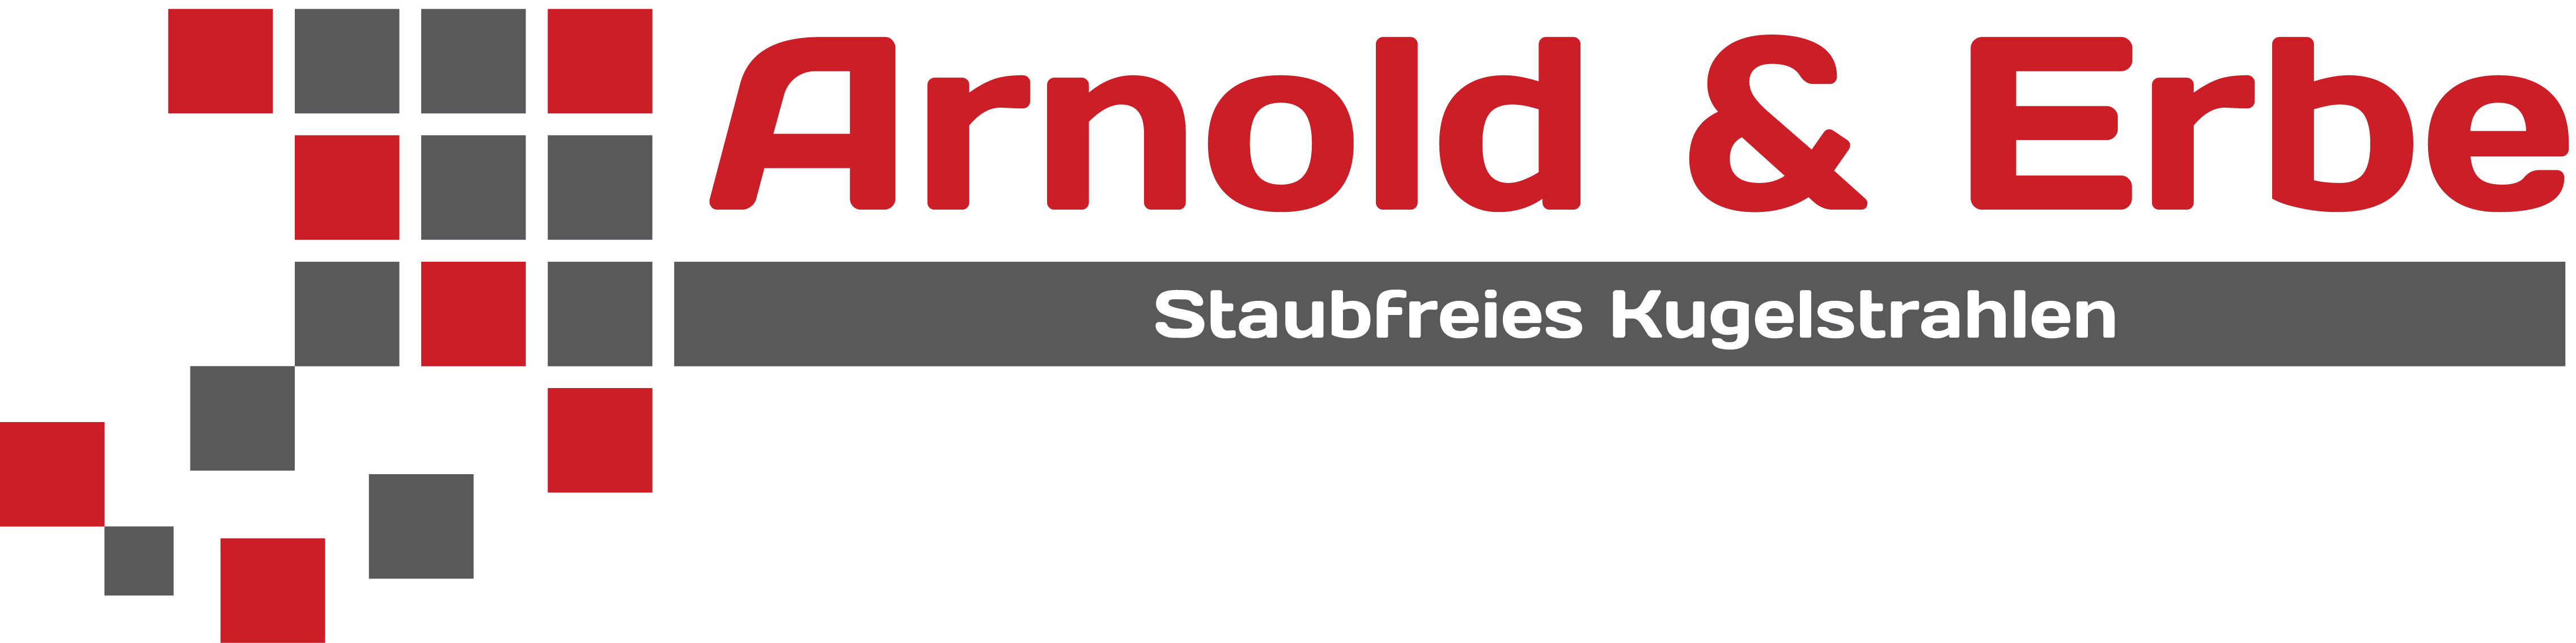 Arnold und Erbe GmbH